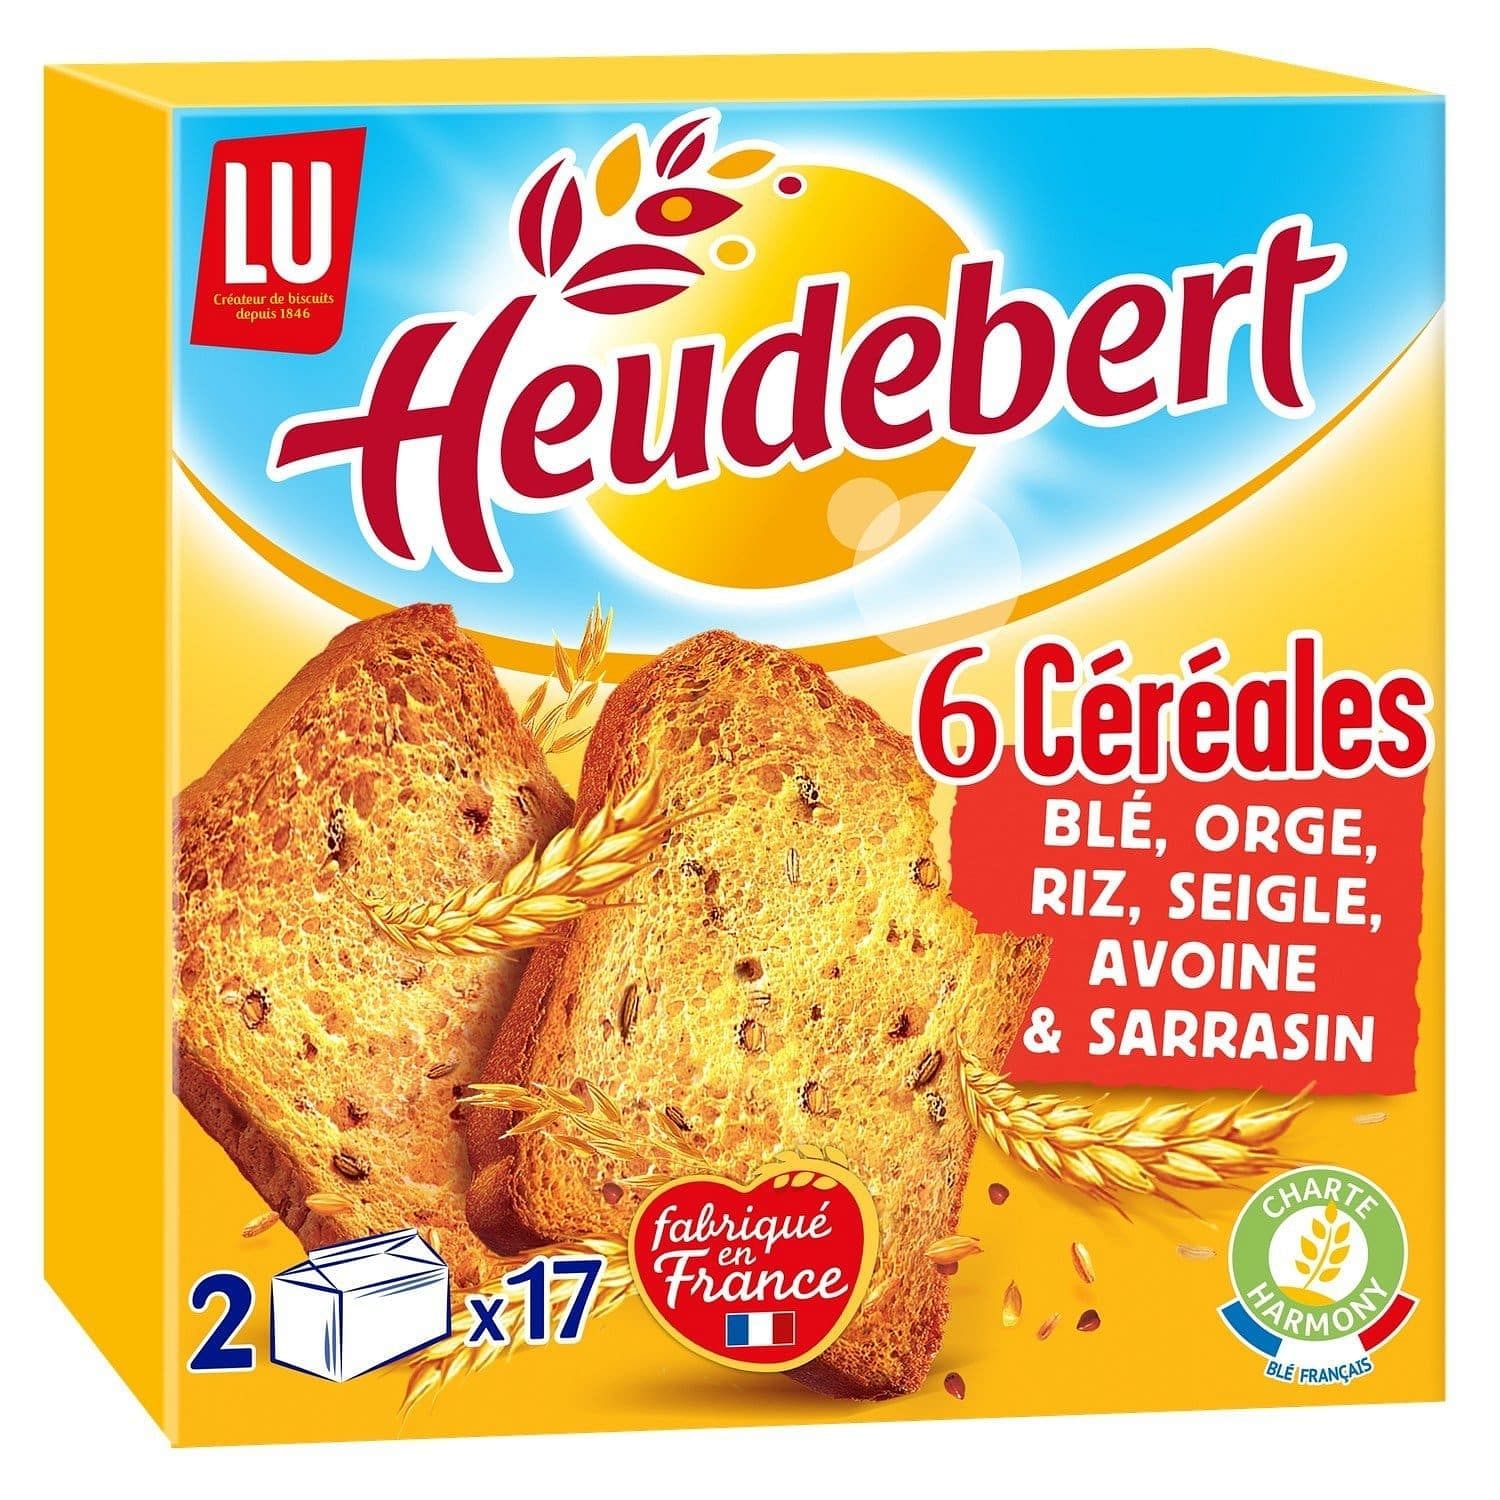 Heudebert Biscotte with 6 cereals – Mon Panier Latin